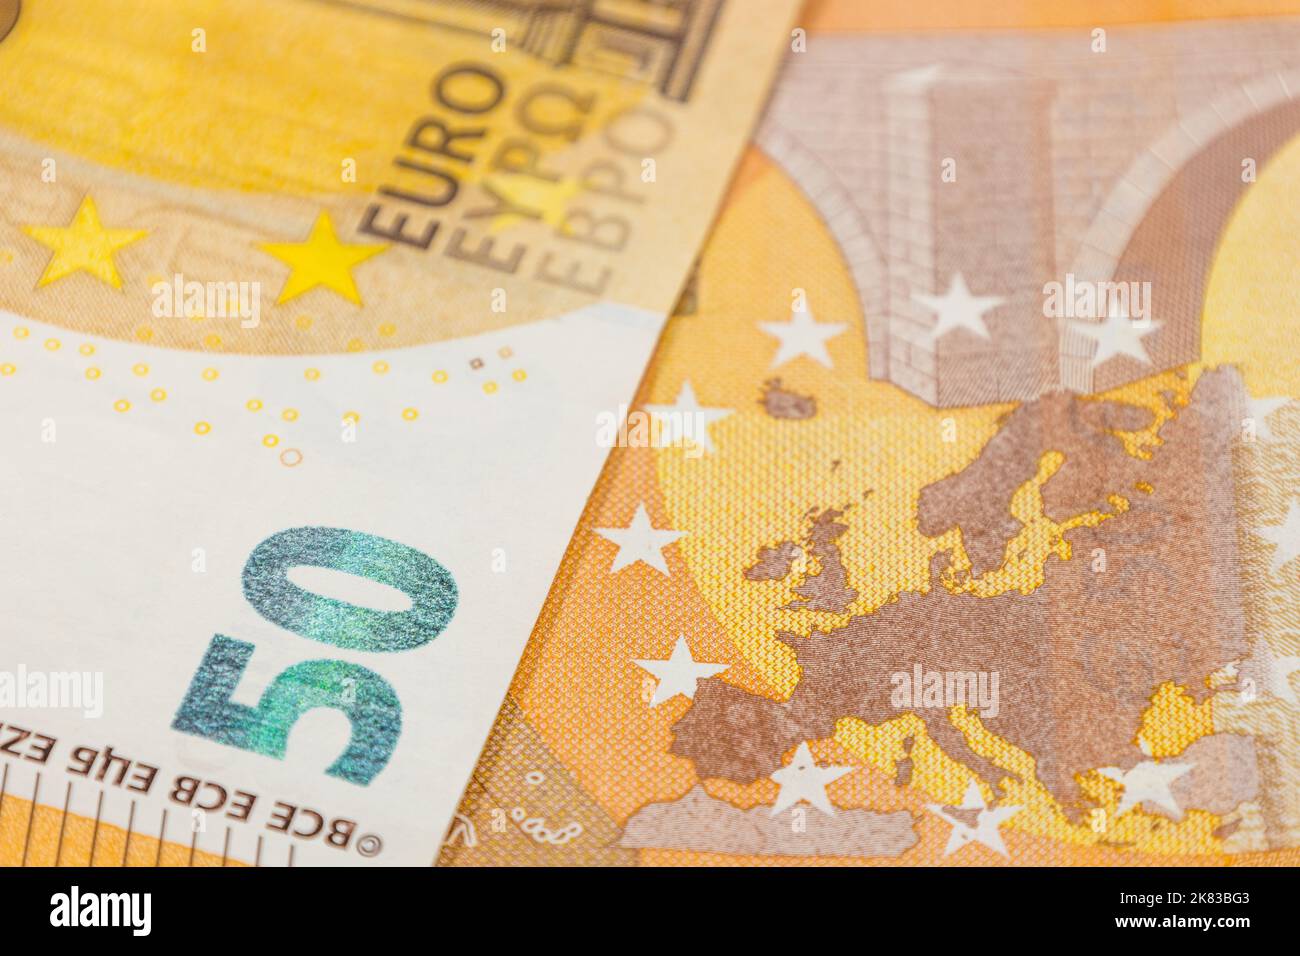 Europa-Karte auf einer 50-Euro-Banknote. Konzept der Vereinigung europäischer Länder Stockfoto